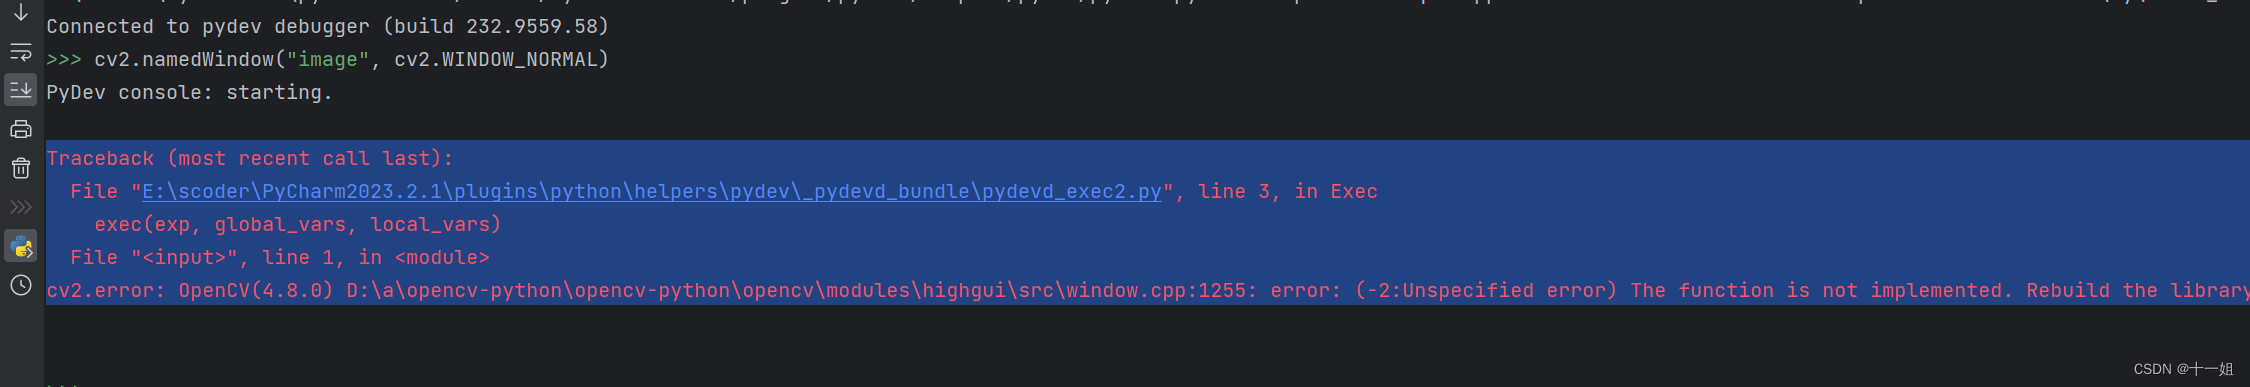 报错解决error: OpenCV(4.8.0) D:\a\opencv-python\opencv-python\opencv\modules\highgui\src\window.cpp:1255